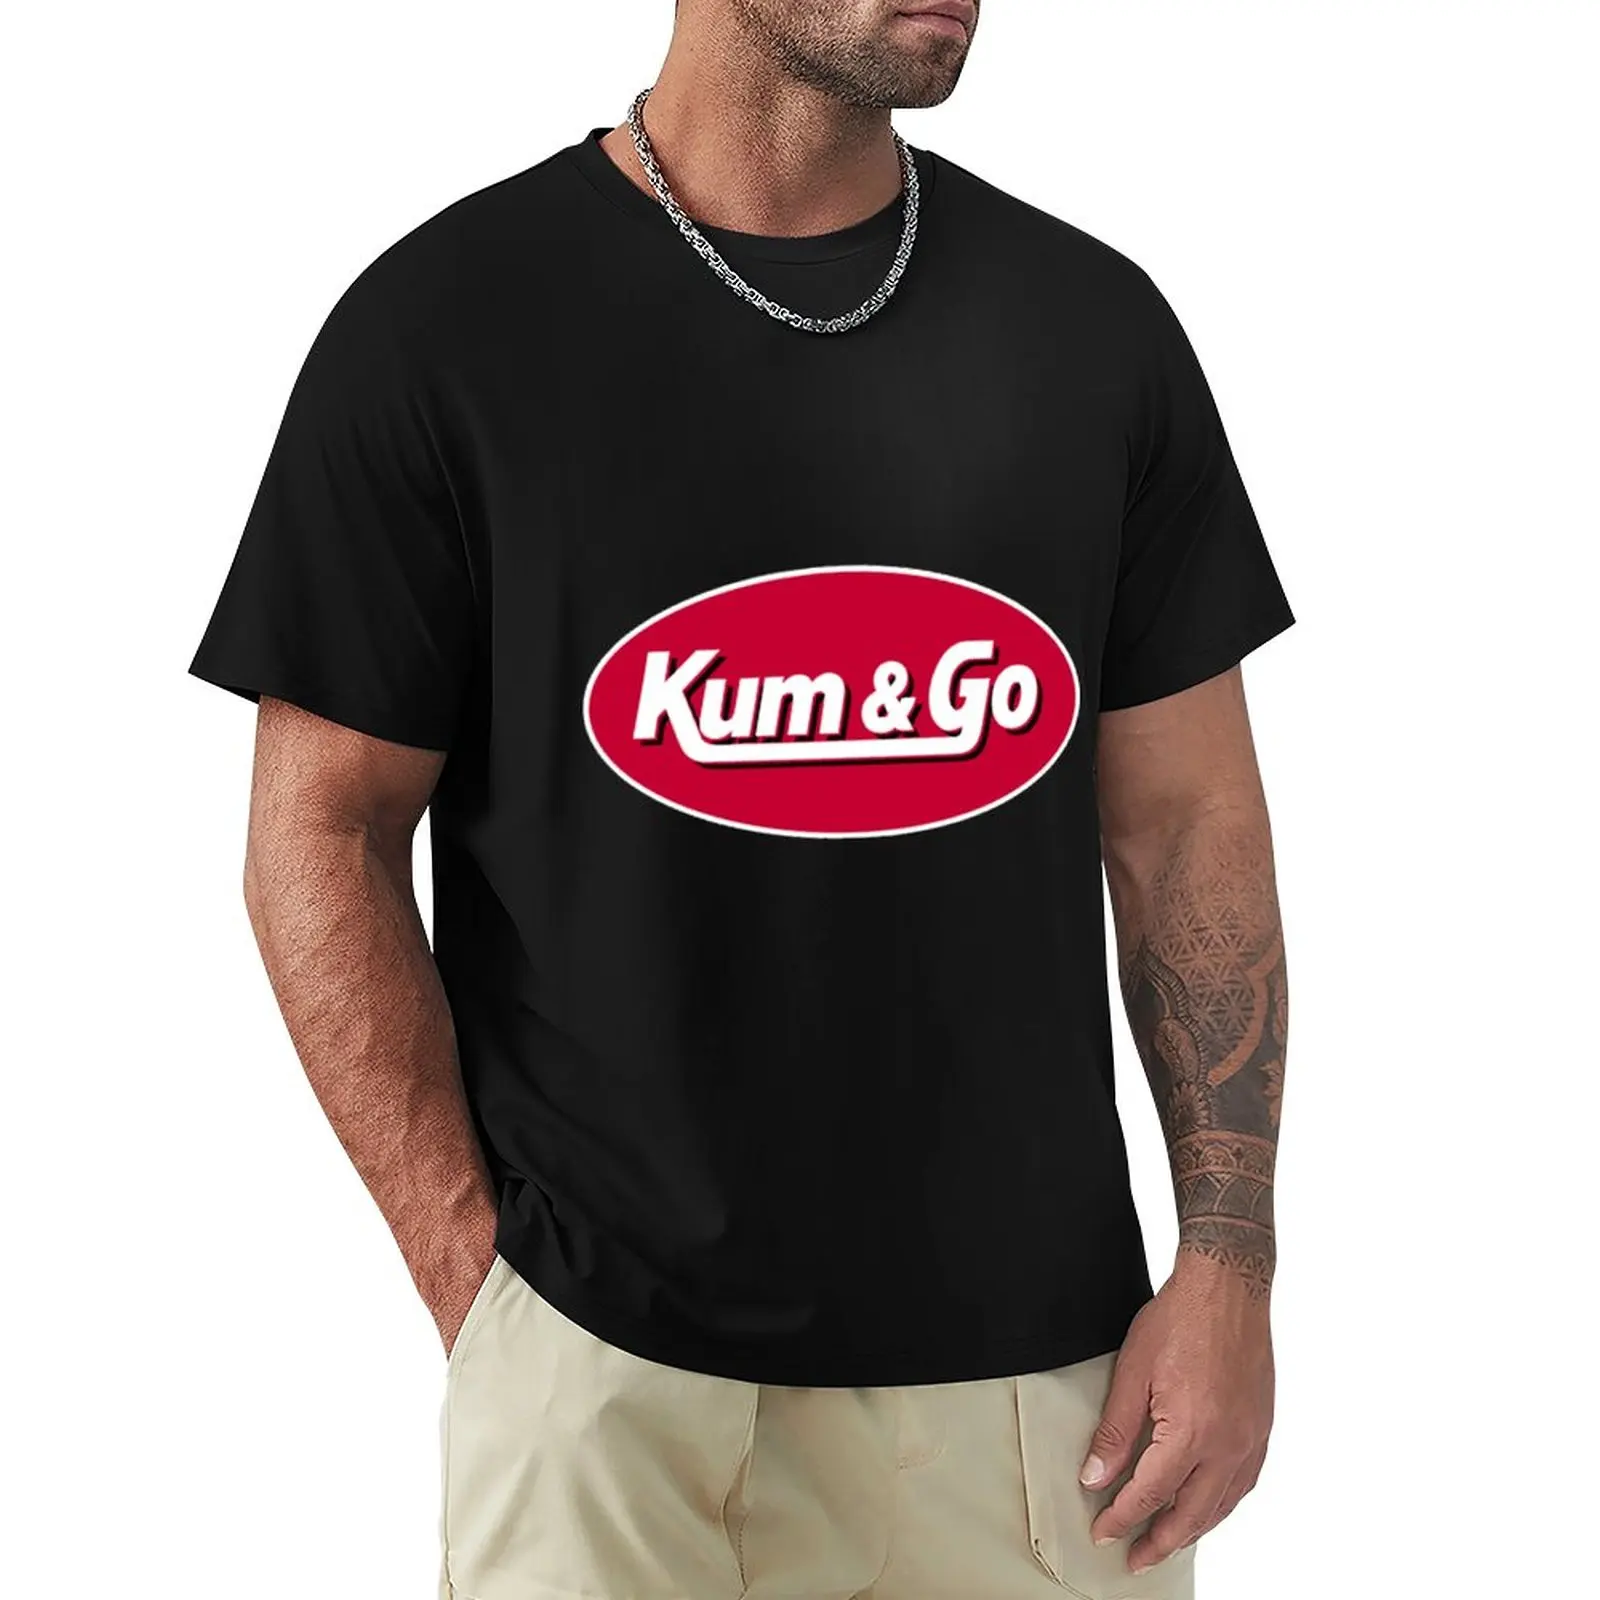 

Kum-And-Go-Logo T-Shirt Short sleeve tee plain Blouse oversized t shirt men